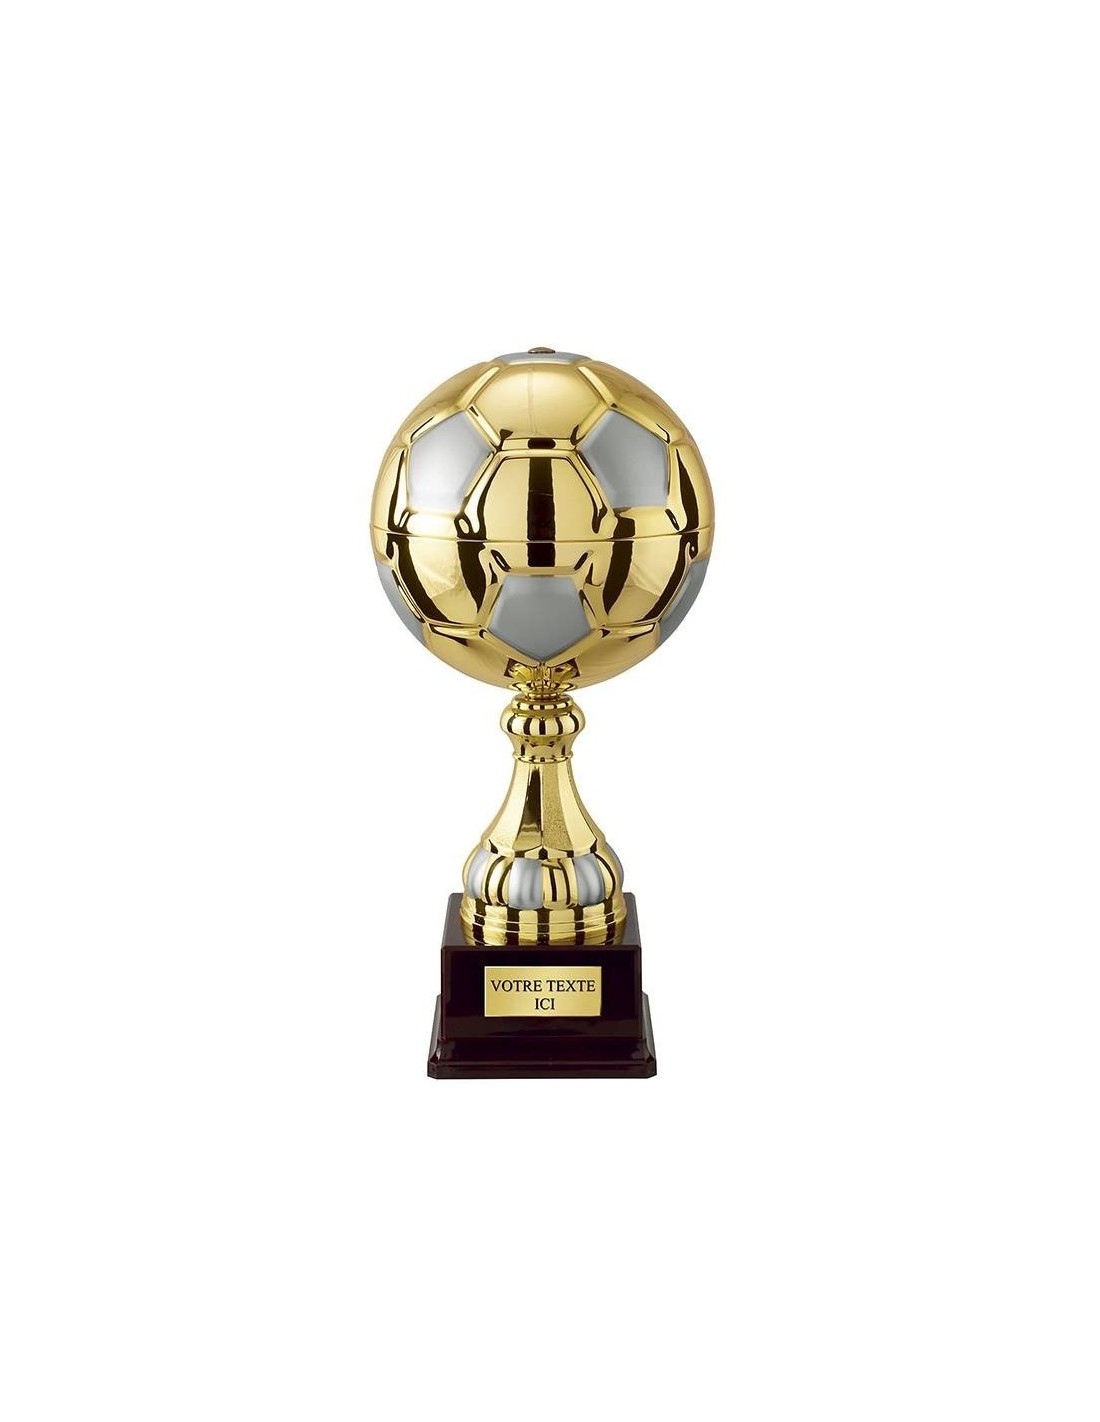 Achetez La Récompense Parfaite : Trophée Ballon De Foot - Cp4336a